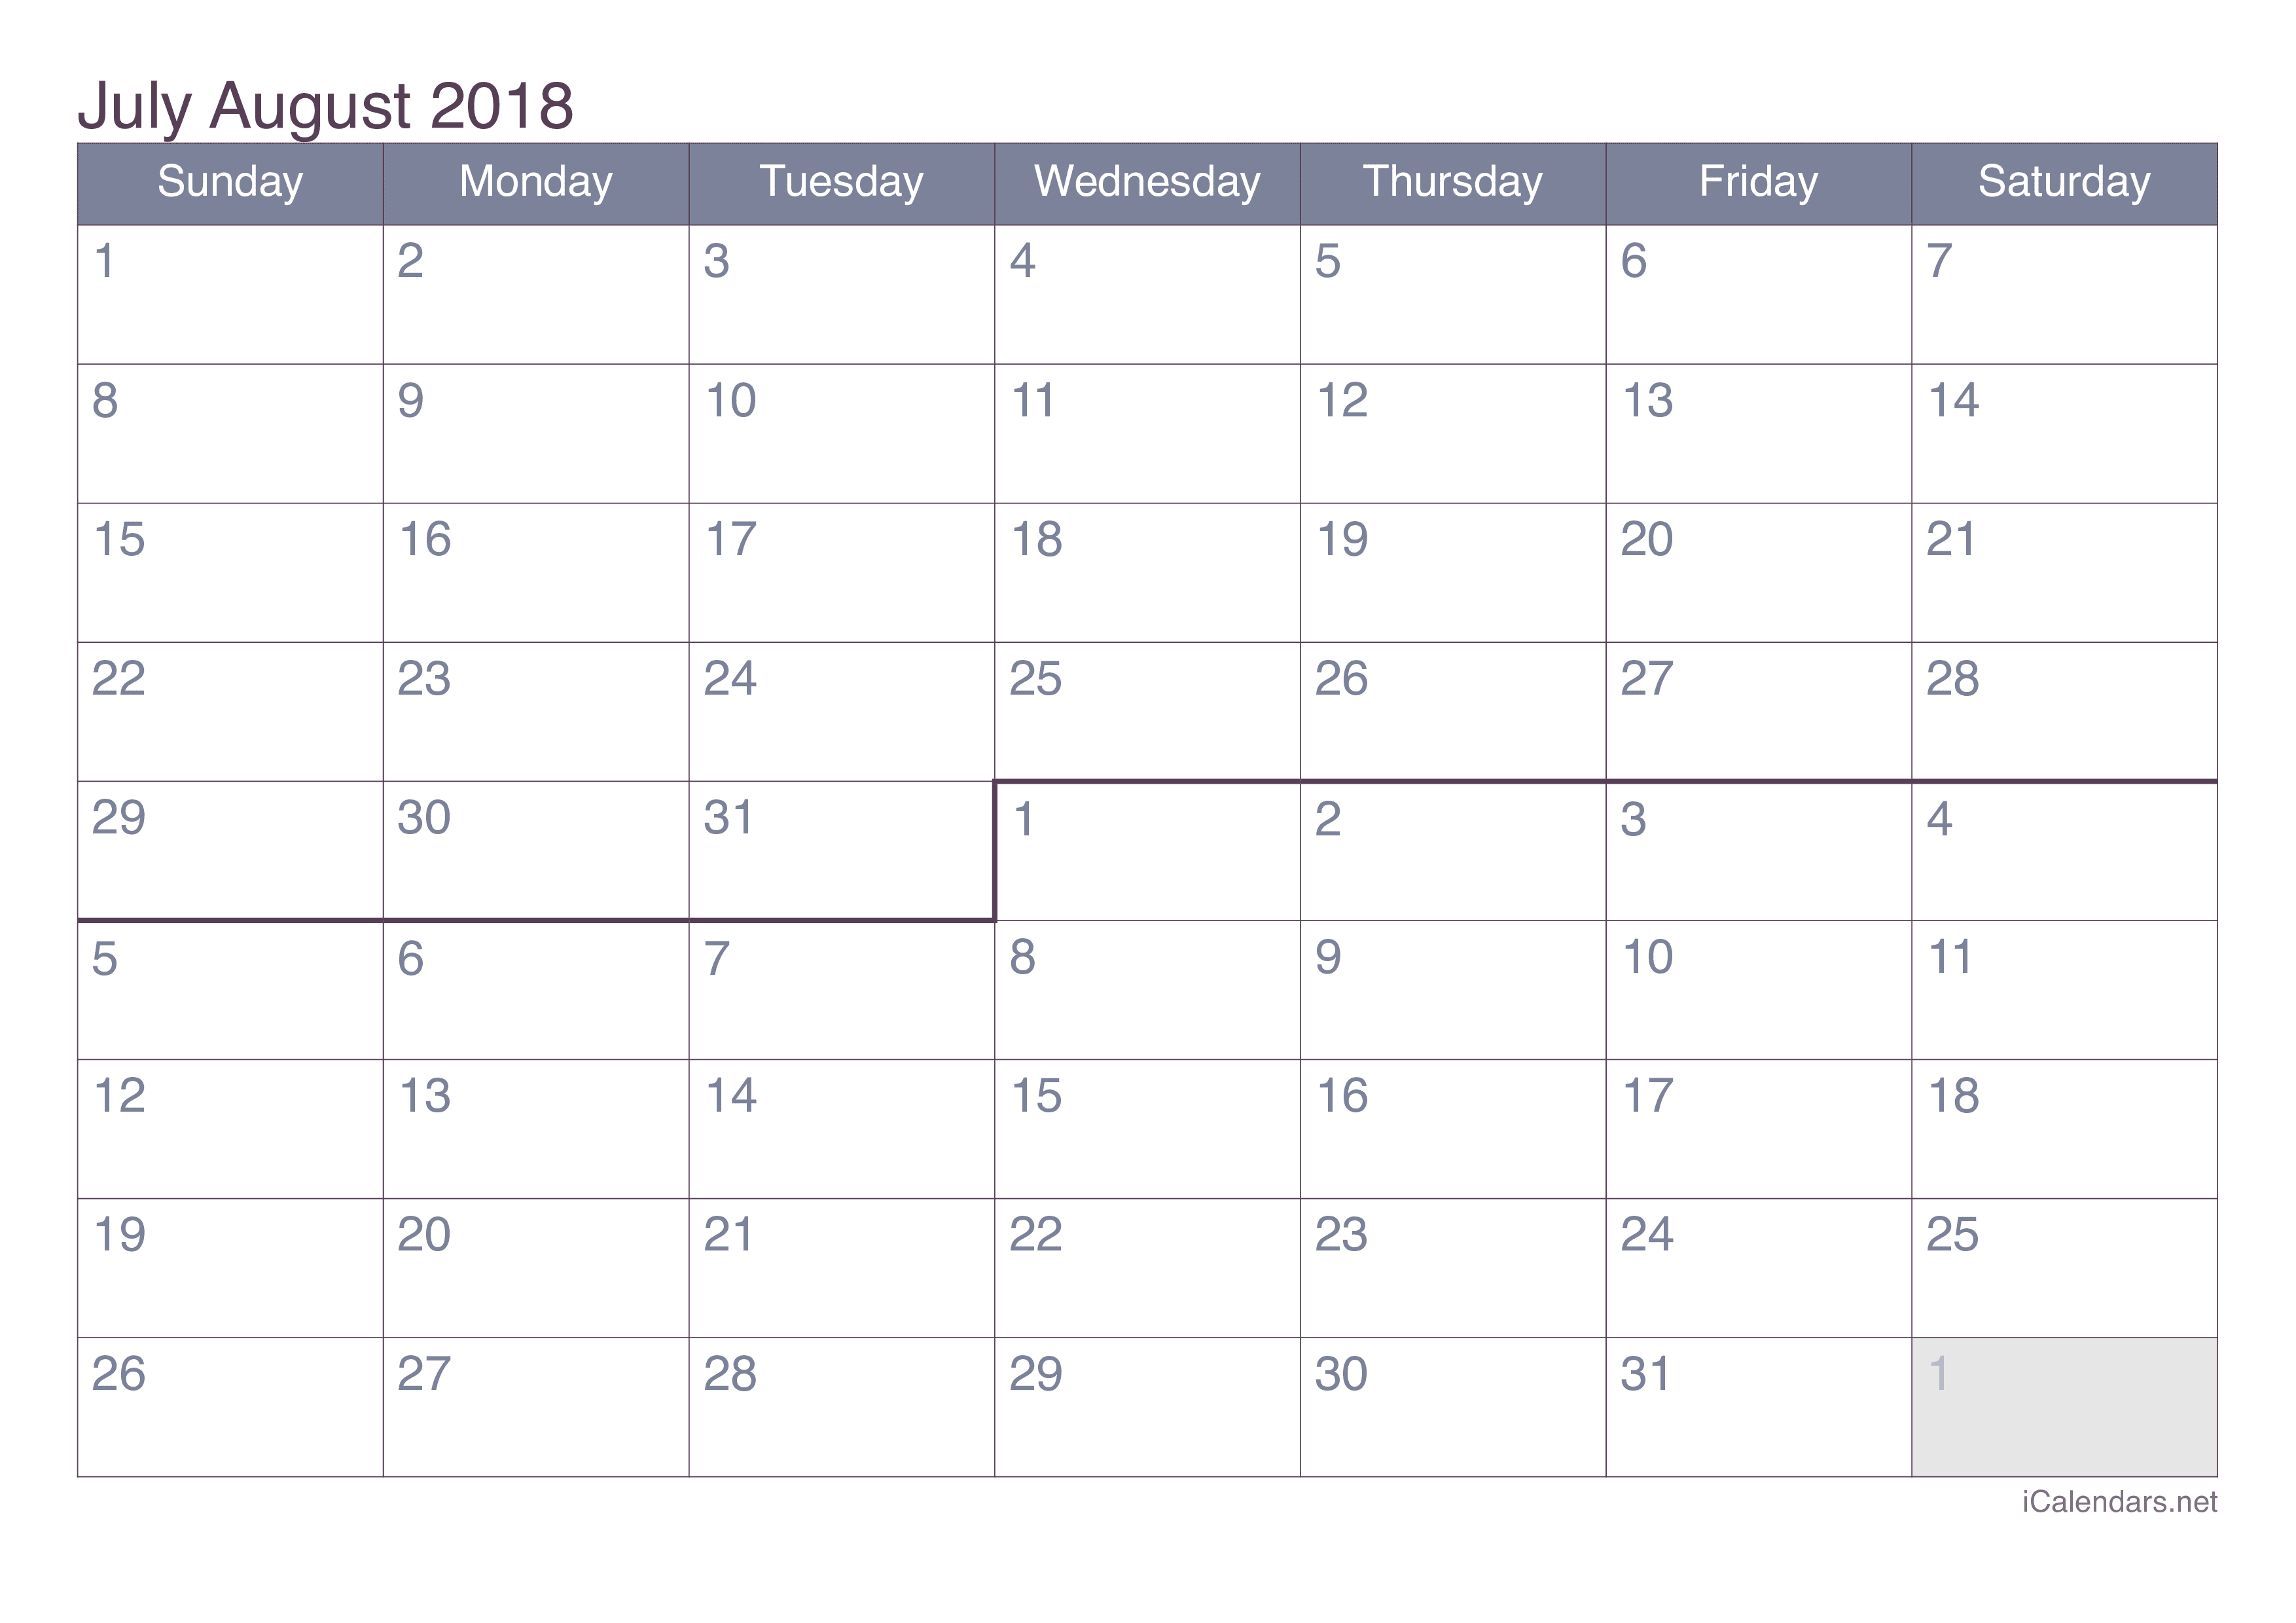 june-july-august-2021-calendar-calendar-options-june-july-august-2020